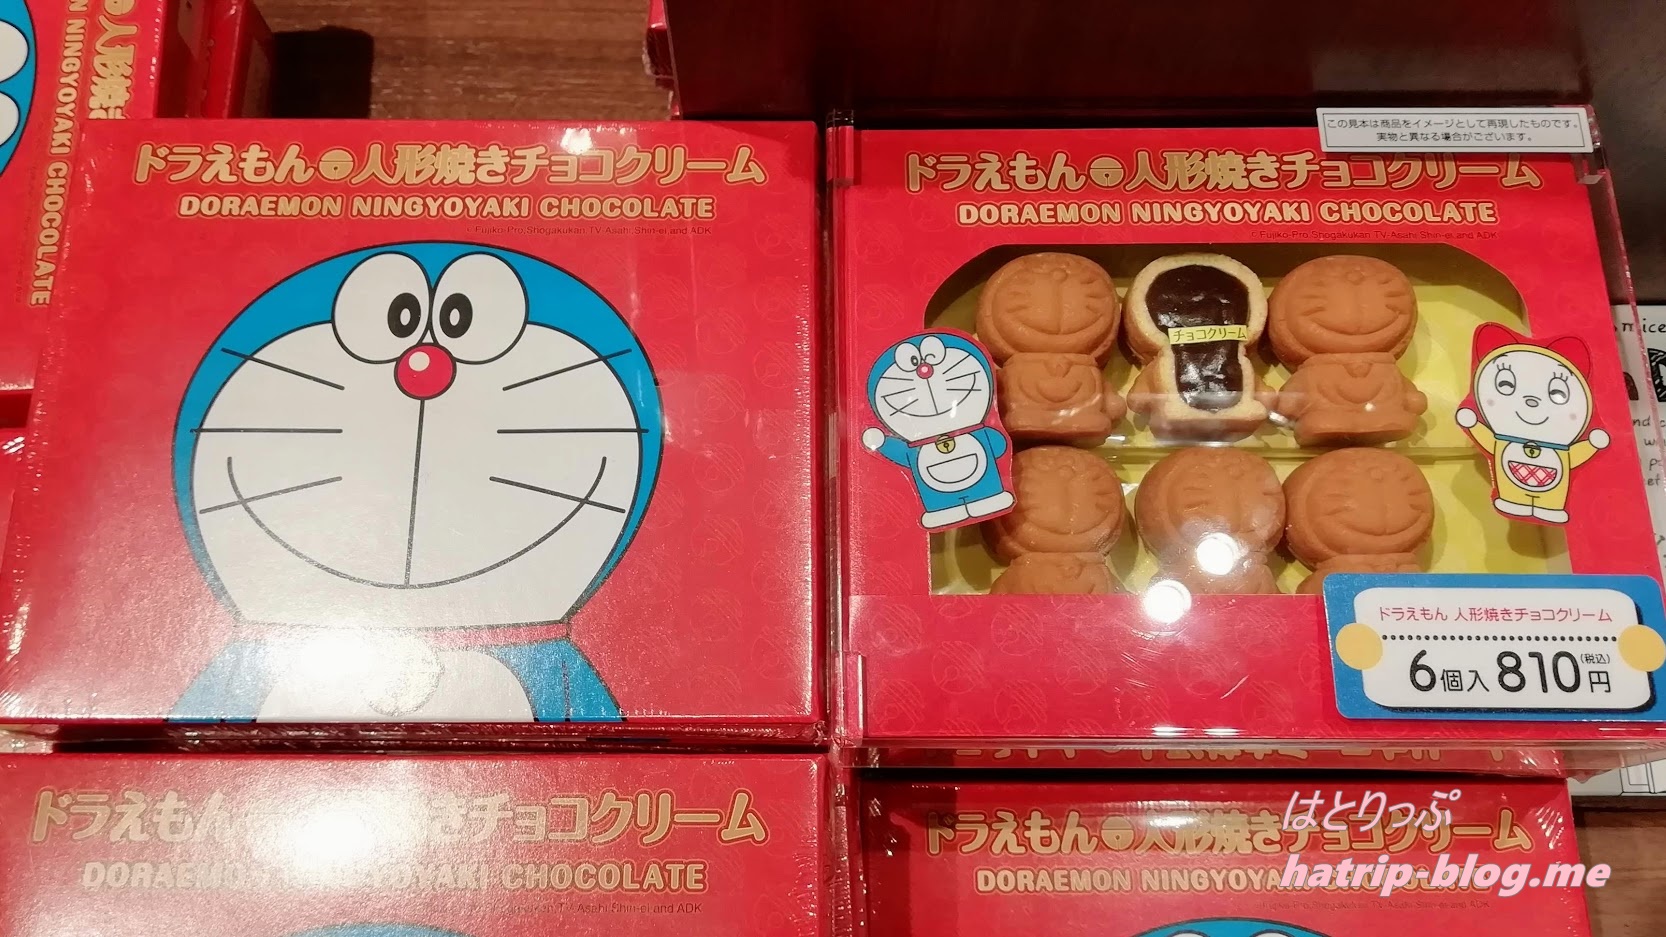 お台場 ダイバーシティ東京 ドラえもん未来デパート ドラえもん人形焼きチョコクリーム